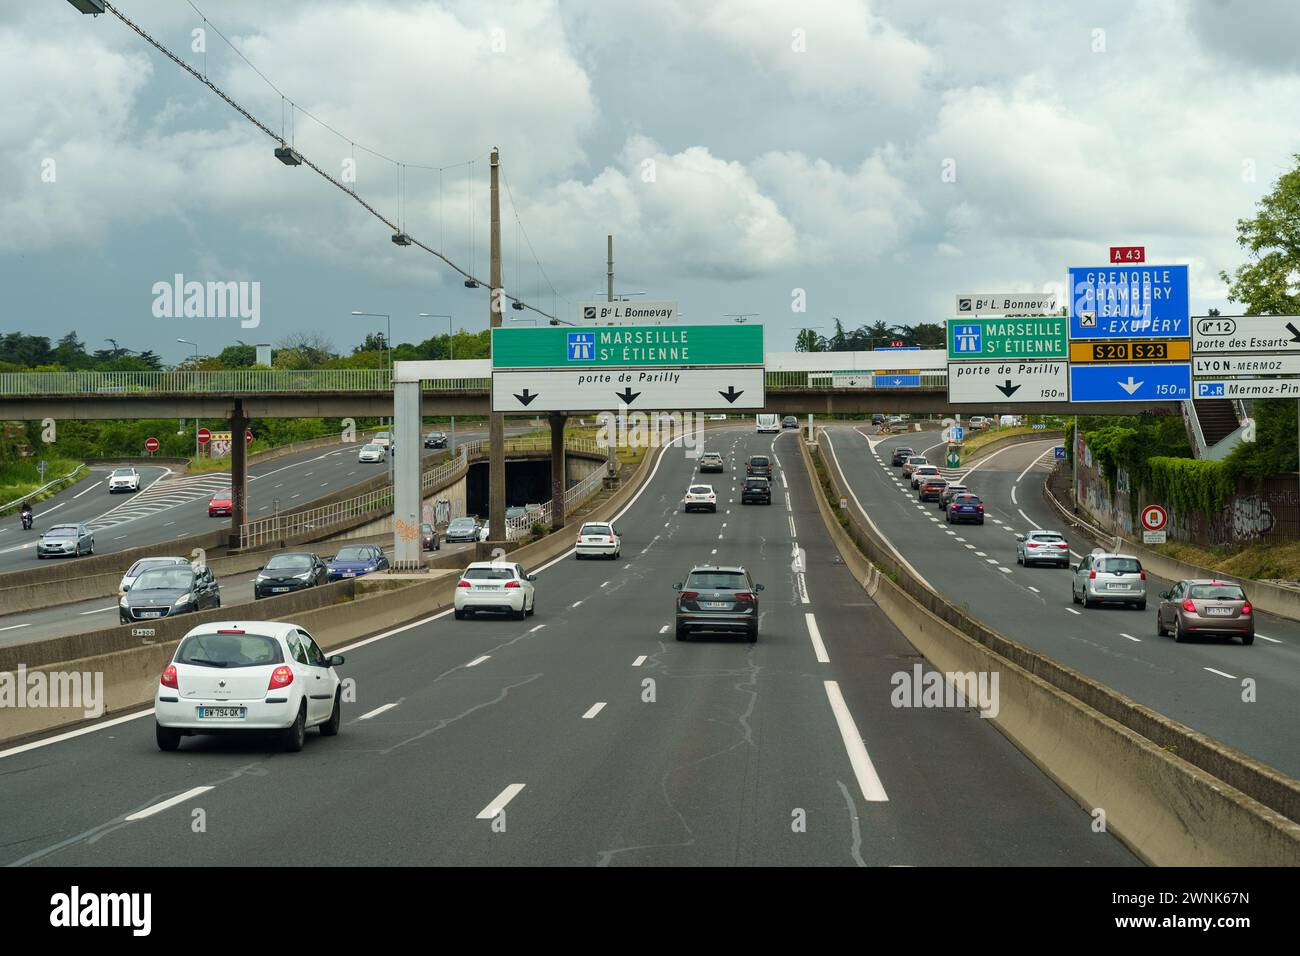 Lyon, France - 7 mai 2023 : une autoroute remplie de nombreux véhicules, y compris des voitures, des camions et des bus, se déplaçant lentement sous un ciel couvert. Banque D'Images